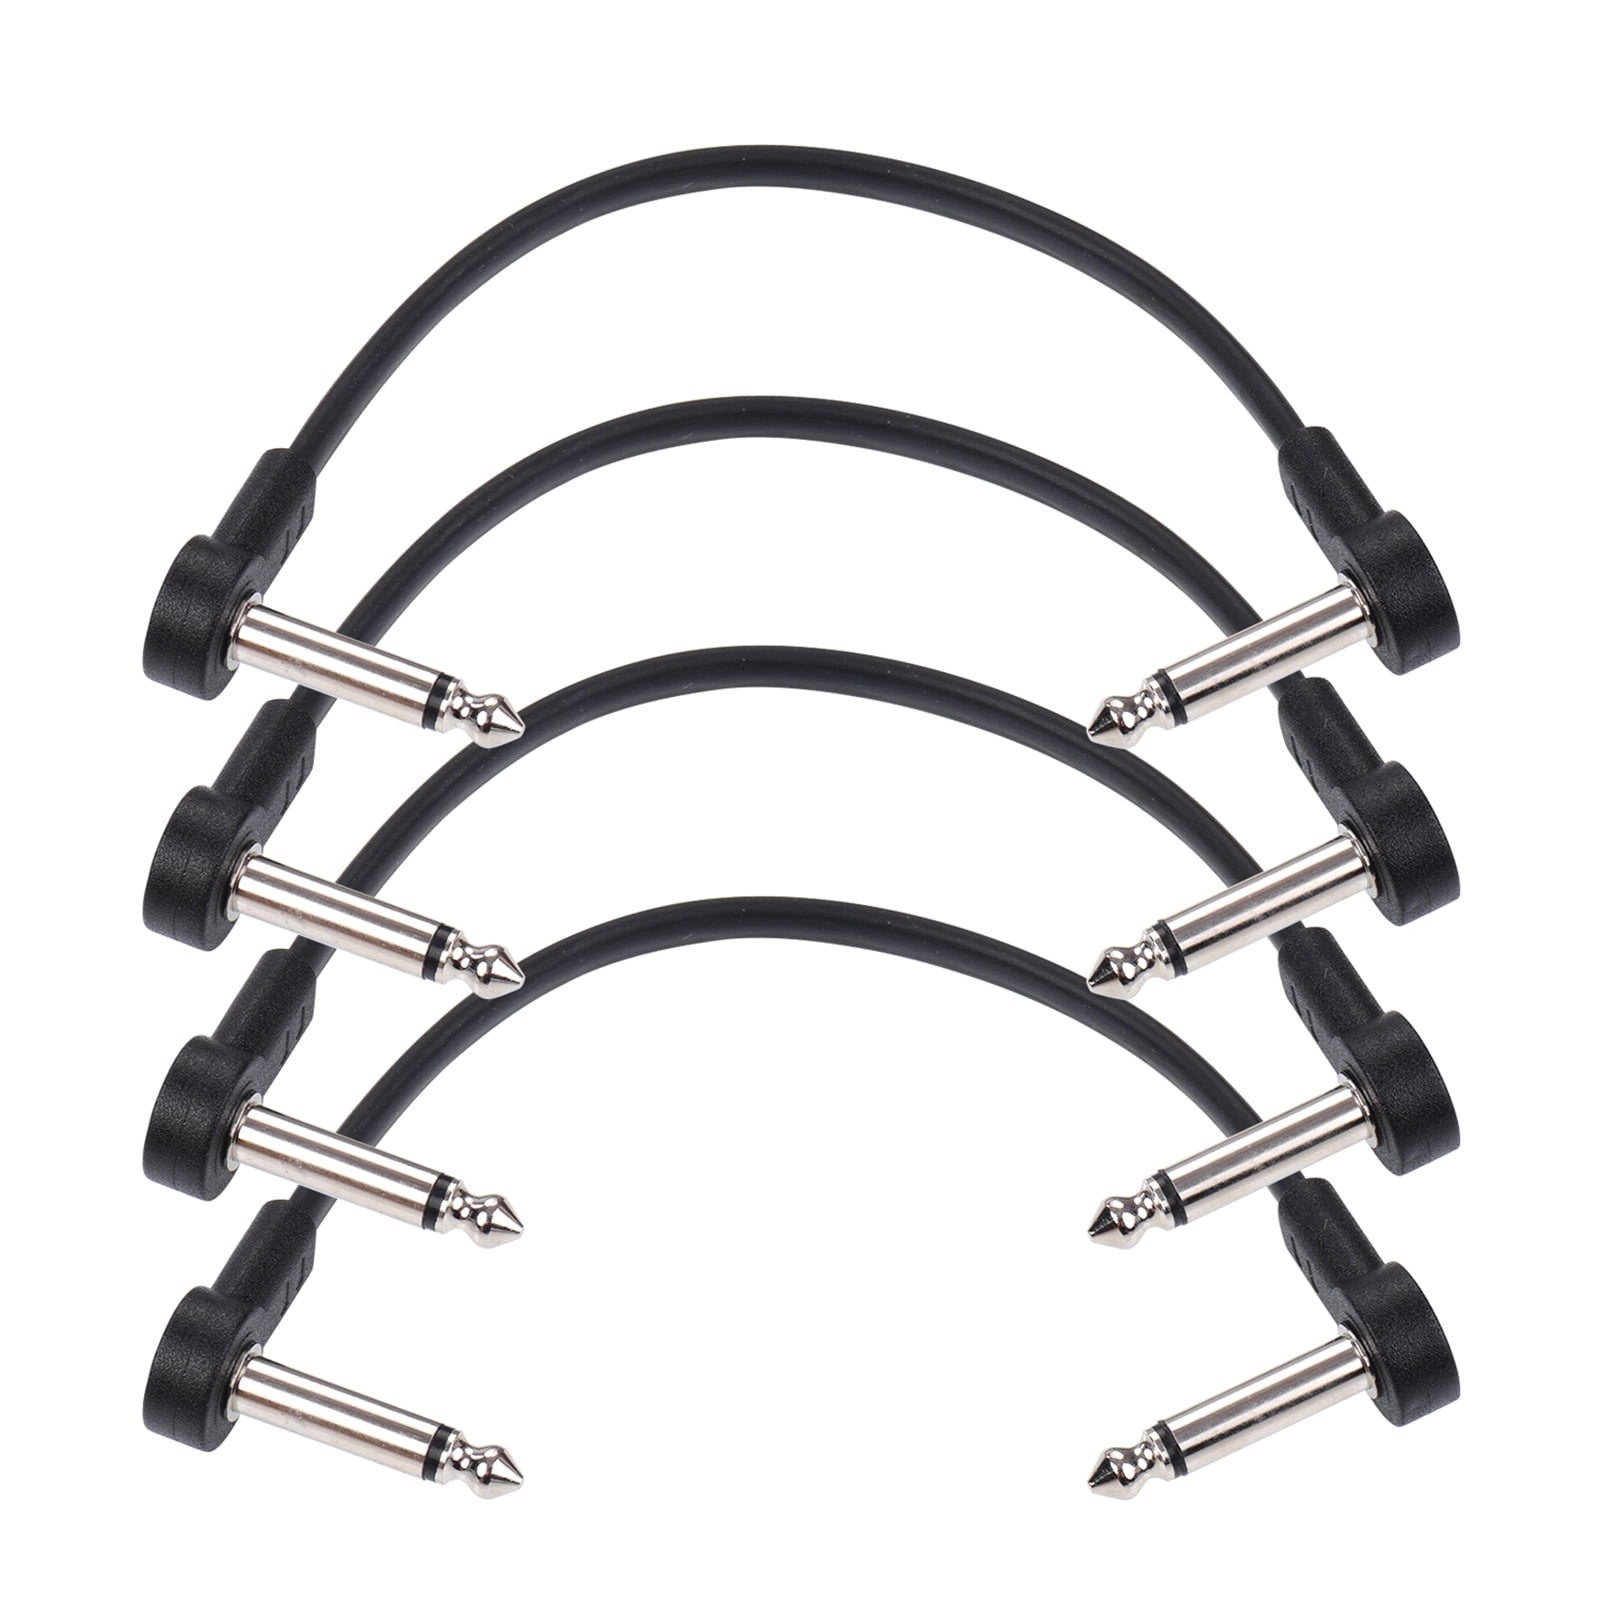 楽器、器材 ギター、ベース用パーツ、アクセサリー Ggiant AC-8 Guitar Effect Pedal Flat Patch Cables 6 Inch Length with 1/4  Inch Right Angle Connectors Patch Cable Kit 4 Packs